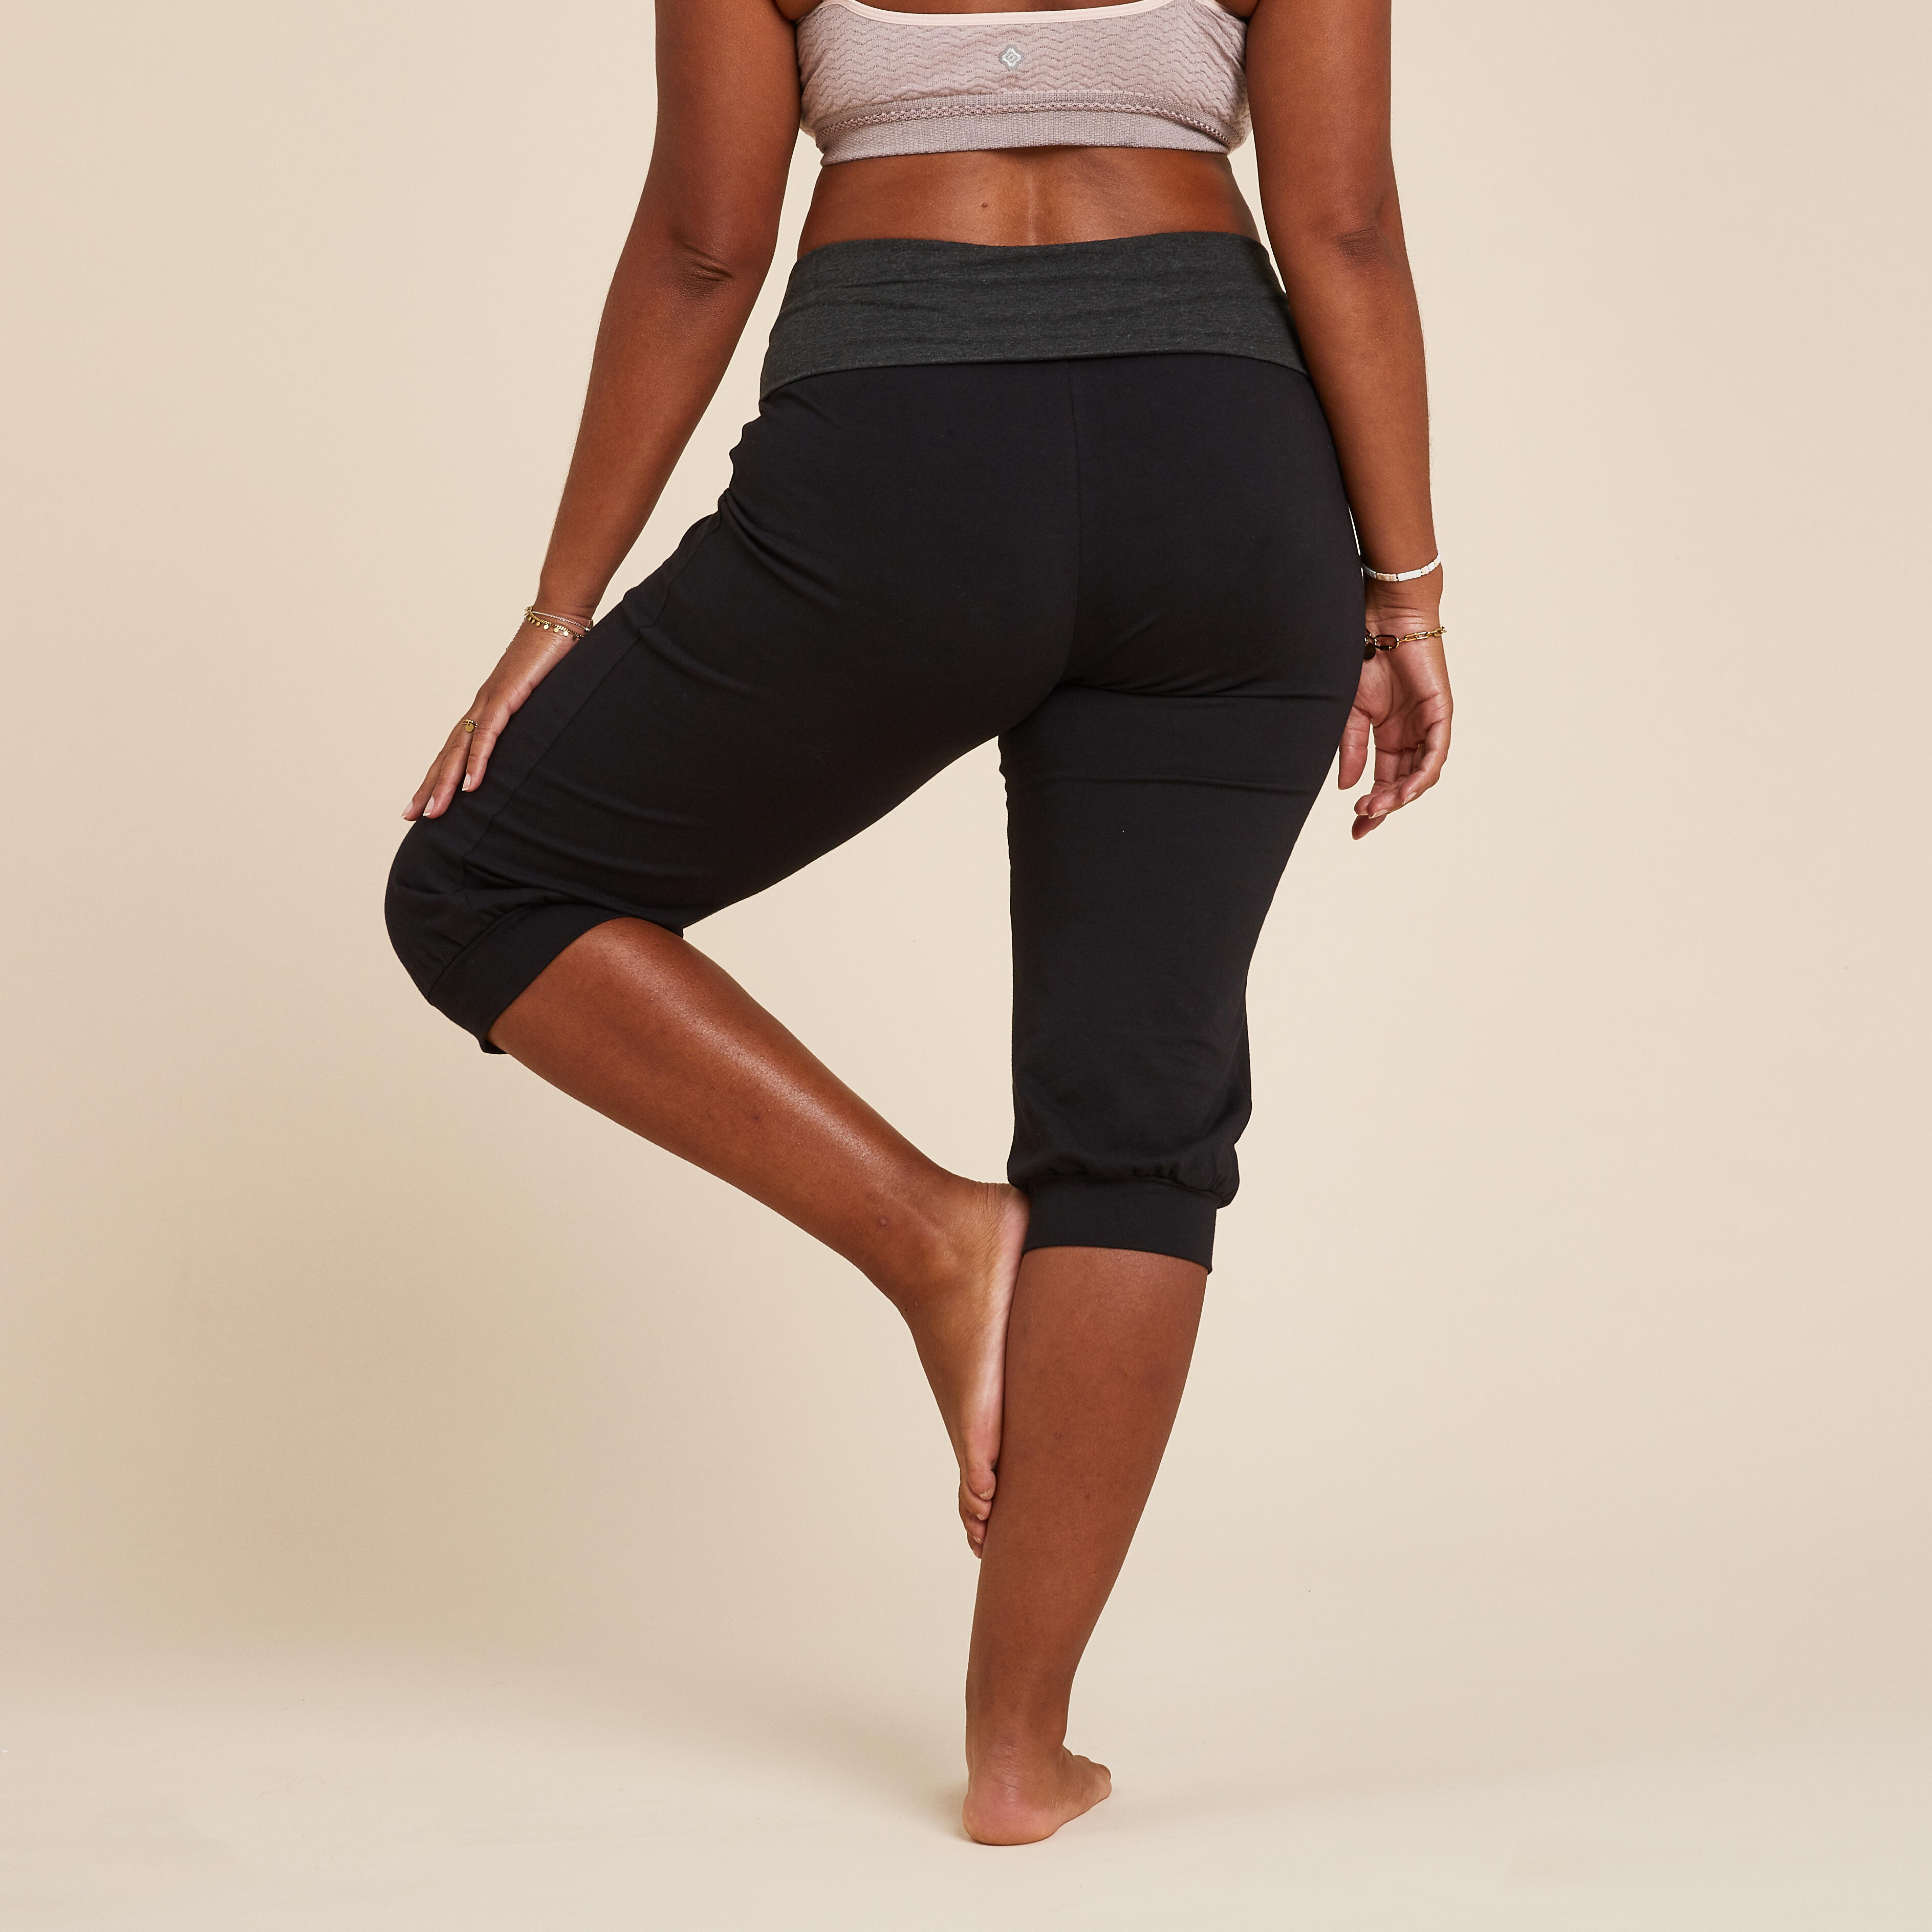 Collant capri de yoga femme – noir/gris - KIMJALY